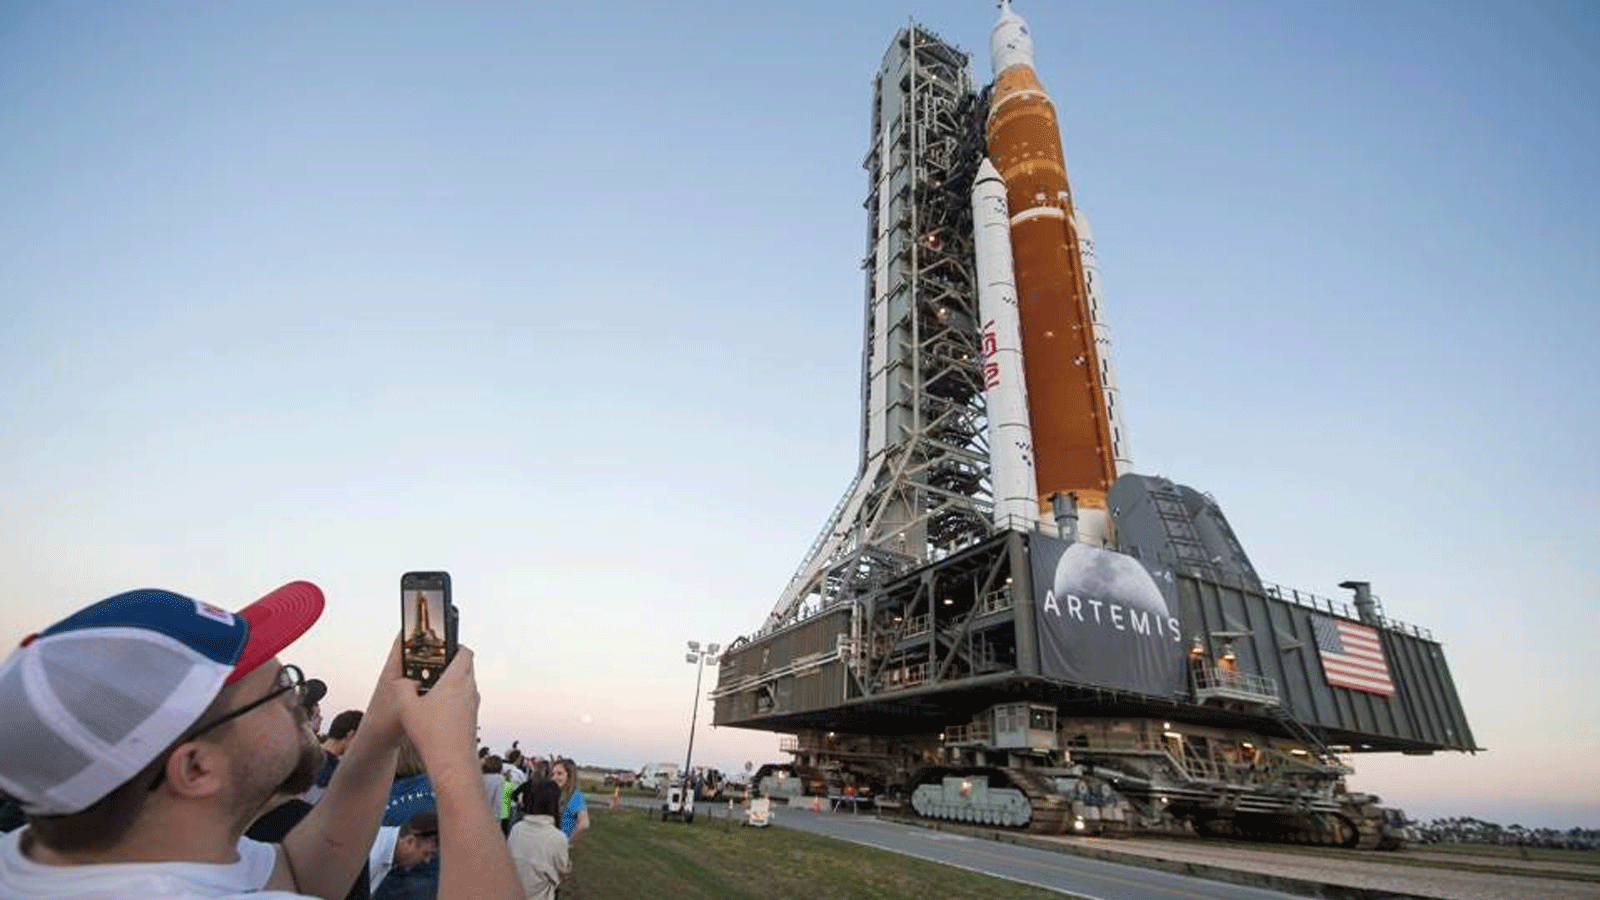 موظفو ناسا والضيوف يلتقطون صوراً لصاروخ نظام الإطلاق الفضائي (SLS) التابع لناسا 